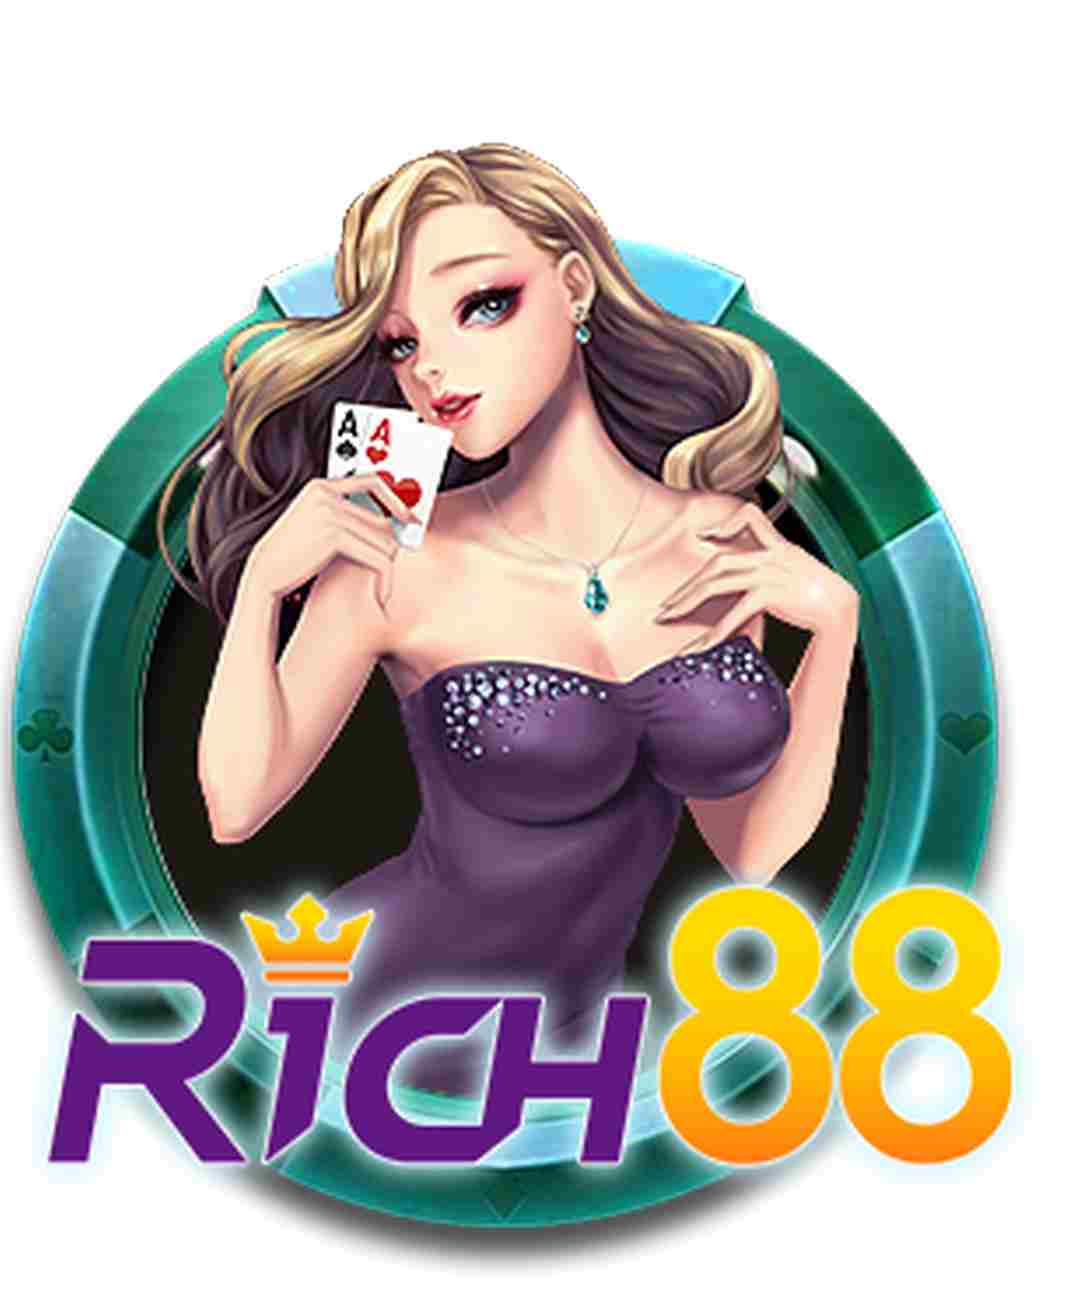 RICH88 được biết đến là một nhà cung cấp game uy tín